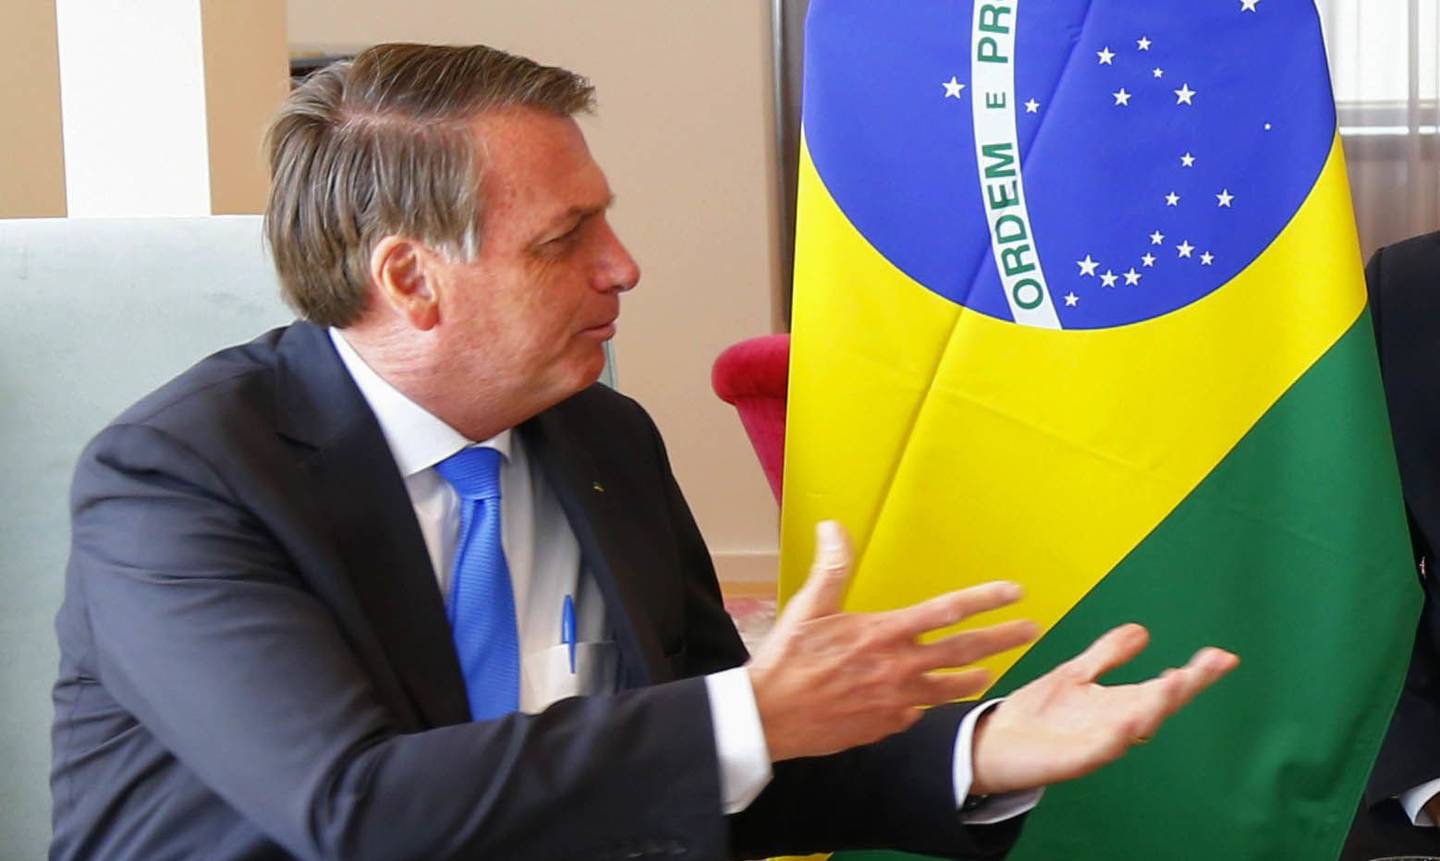 Com Bolsonaro pressionando por mais dinheiro, o acordo foi romper o limite de gastos temporariamente enquanto o governo encontra uma fonte permanente de financiamento para o Auxilio Brasil